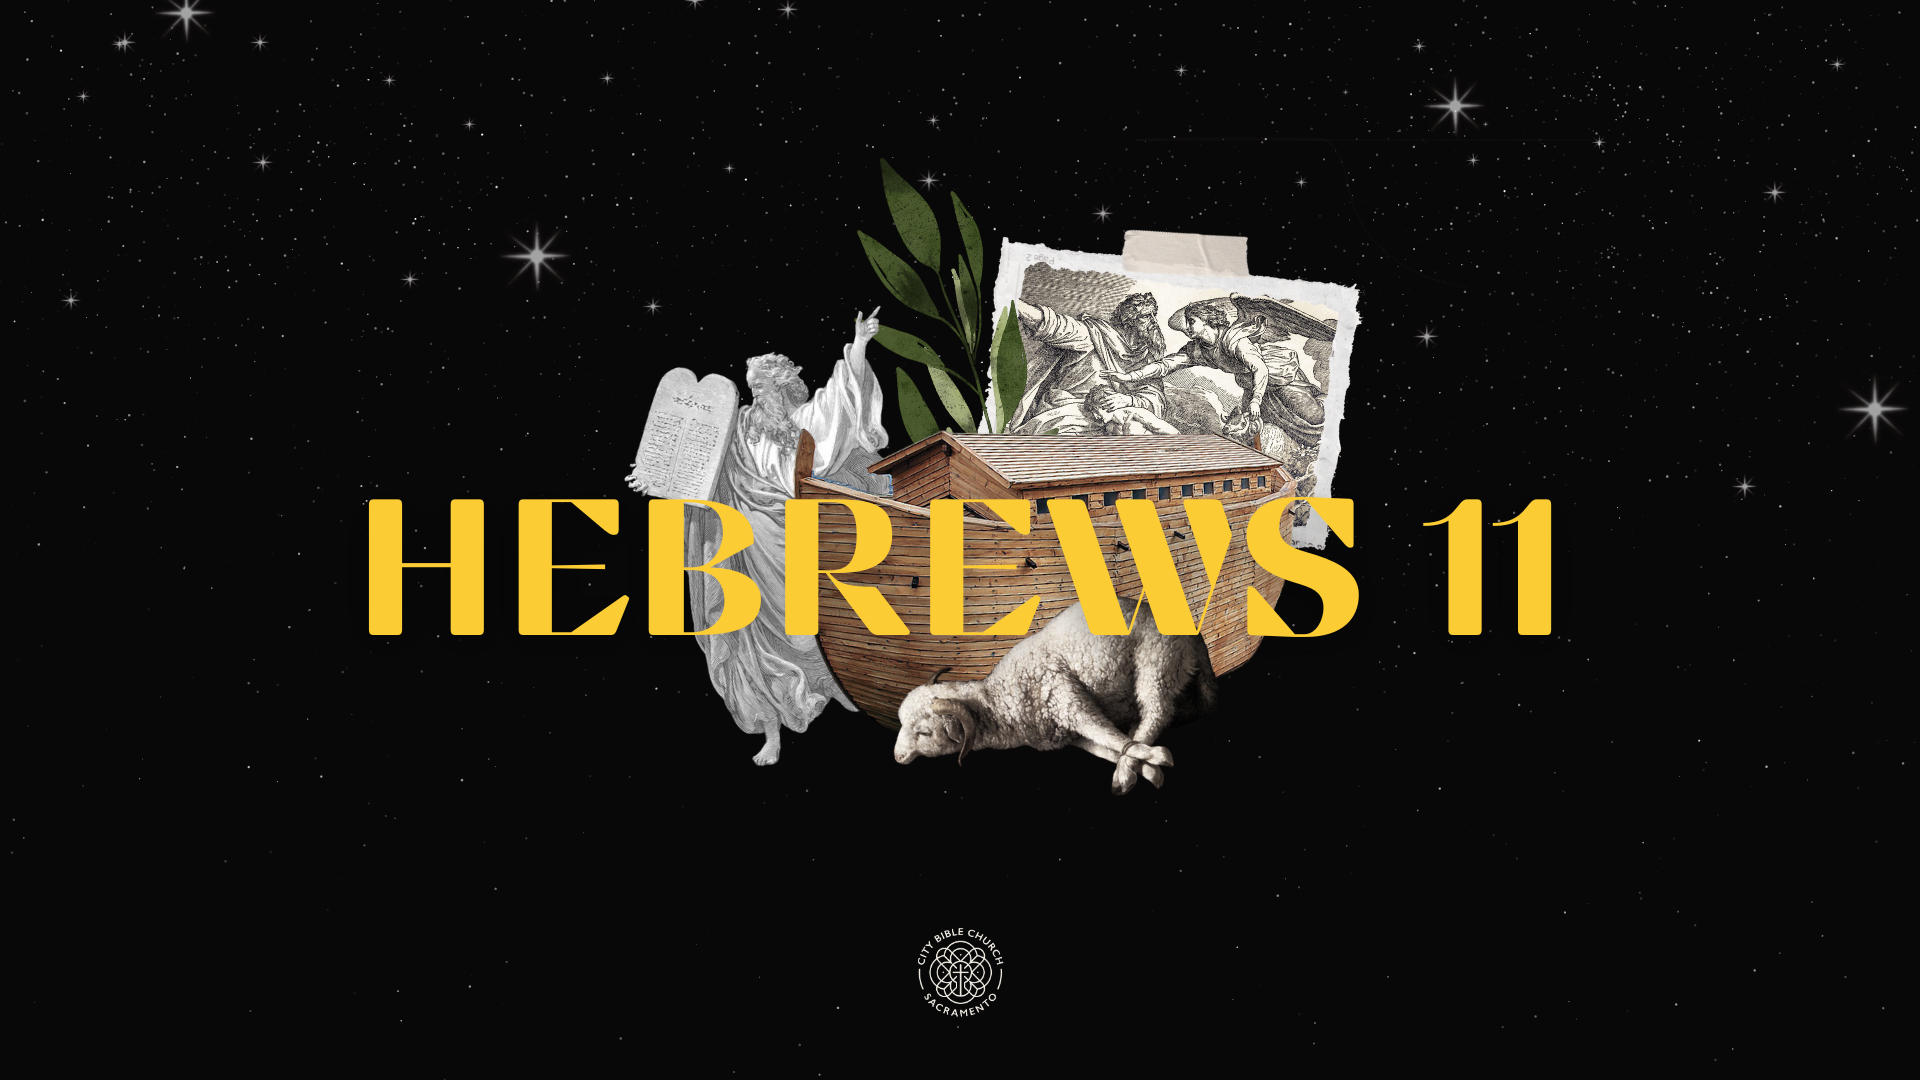 Hebrews 11 banner